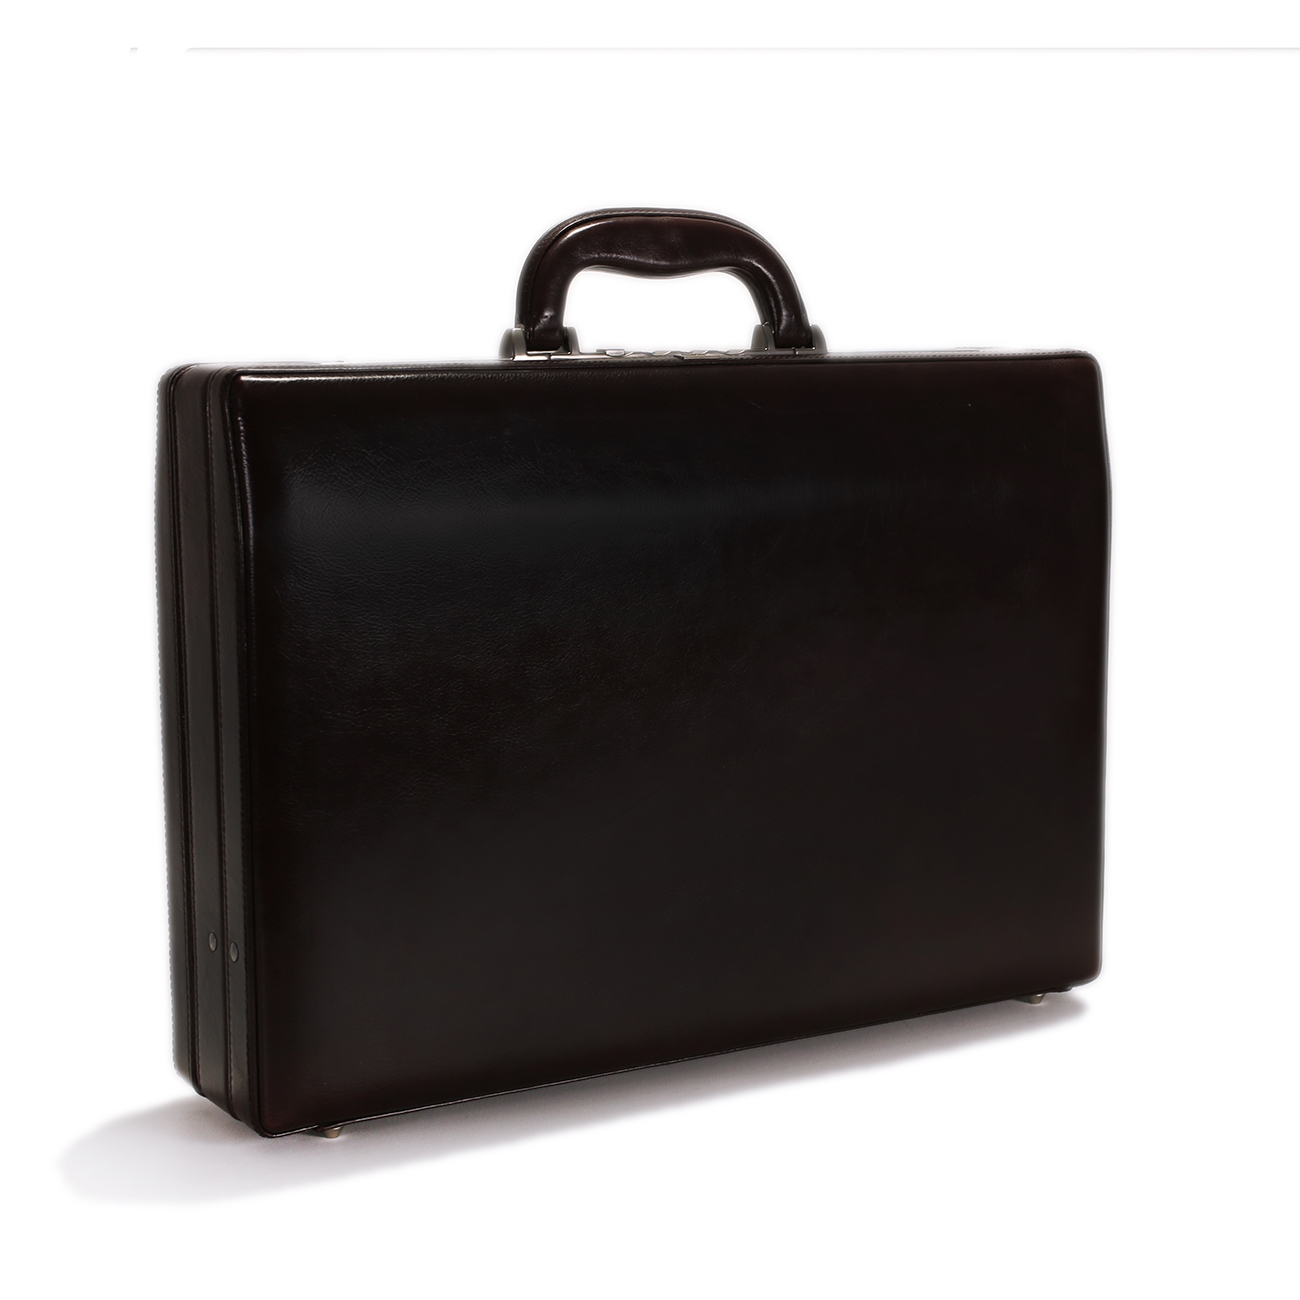 Leather Attache Case - CODE 131-0241